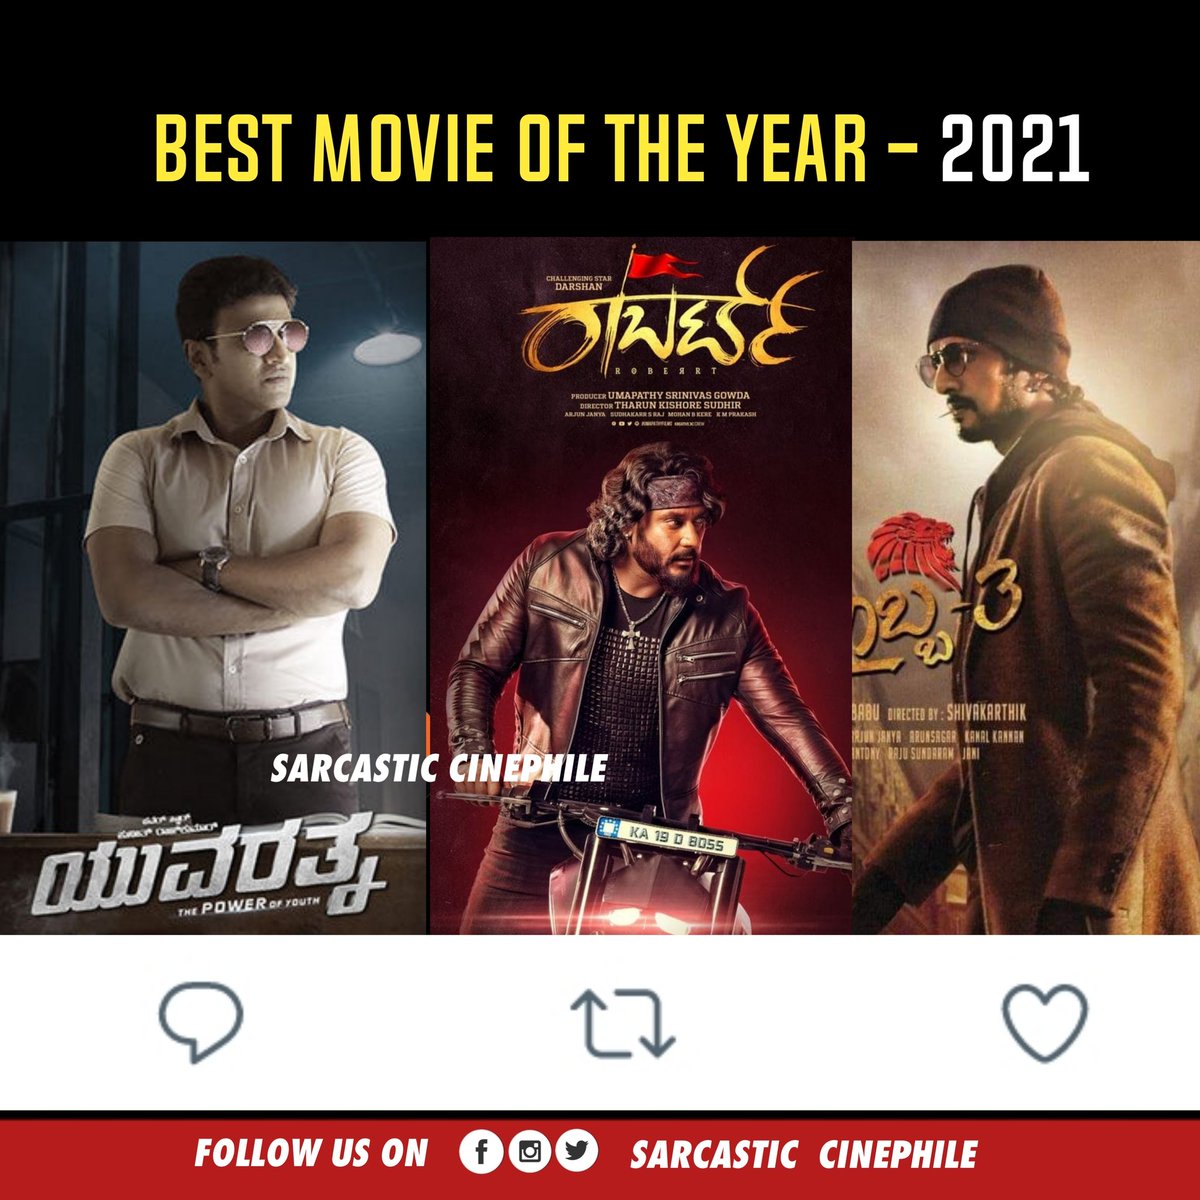 Best Movie of the year - 2021.

#yuvarathna - 📝
#Roberrt - 🔁
#Kotigobba3 - ♥️